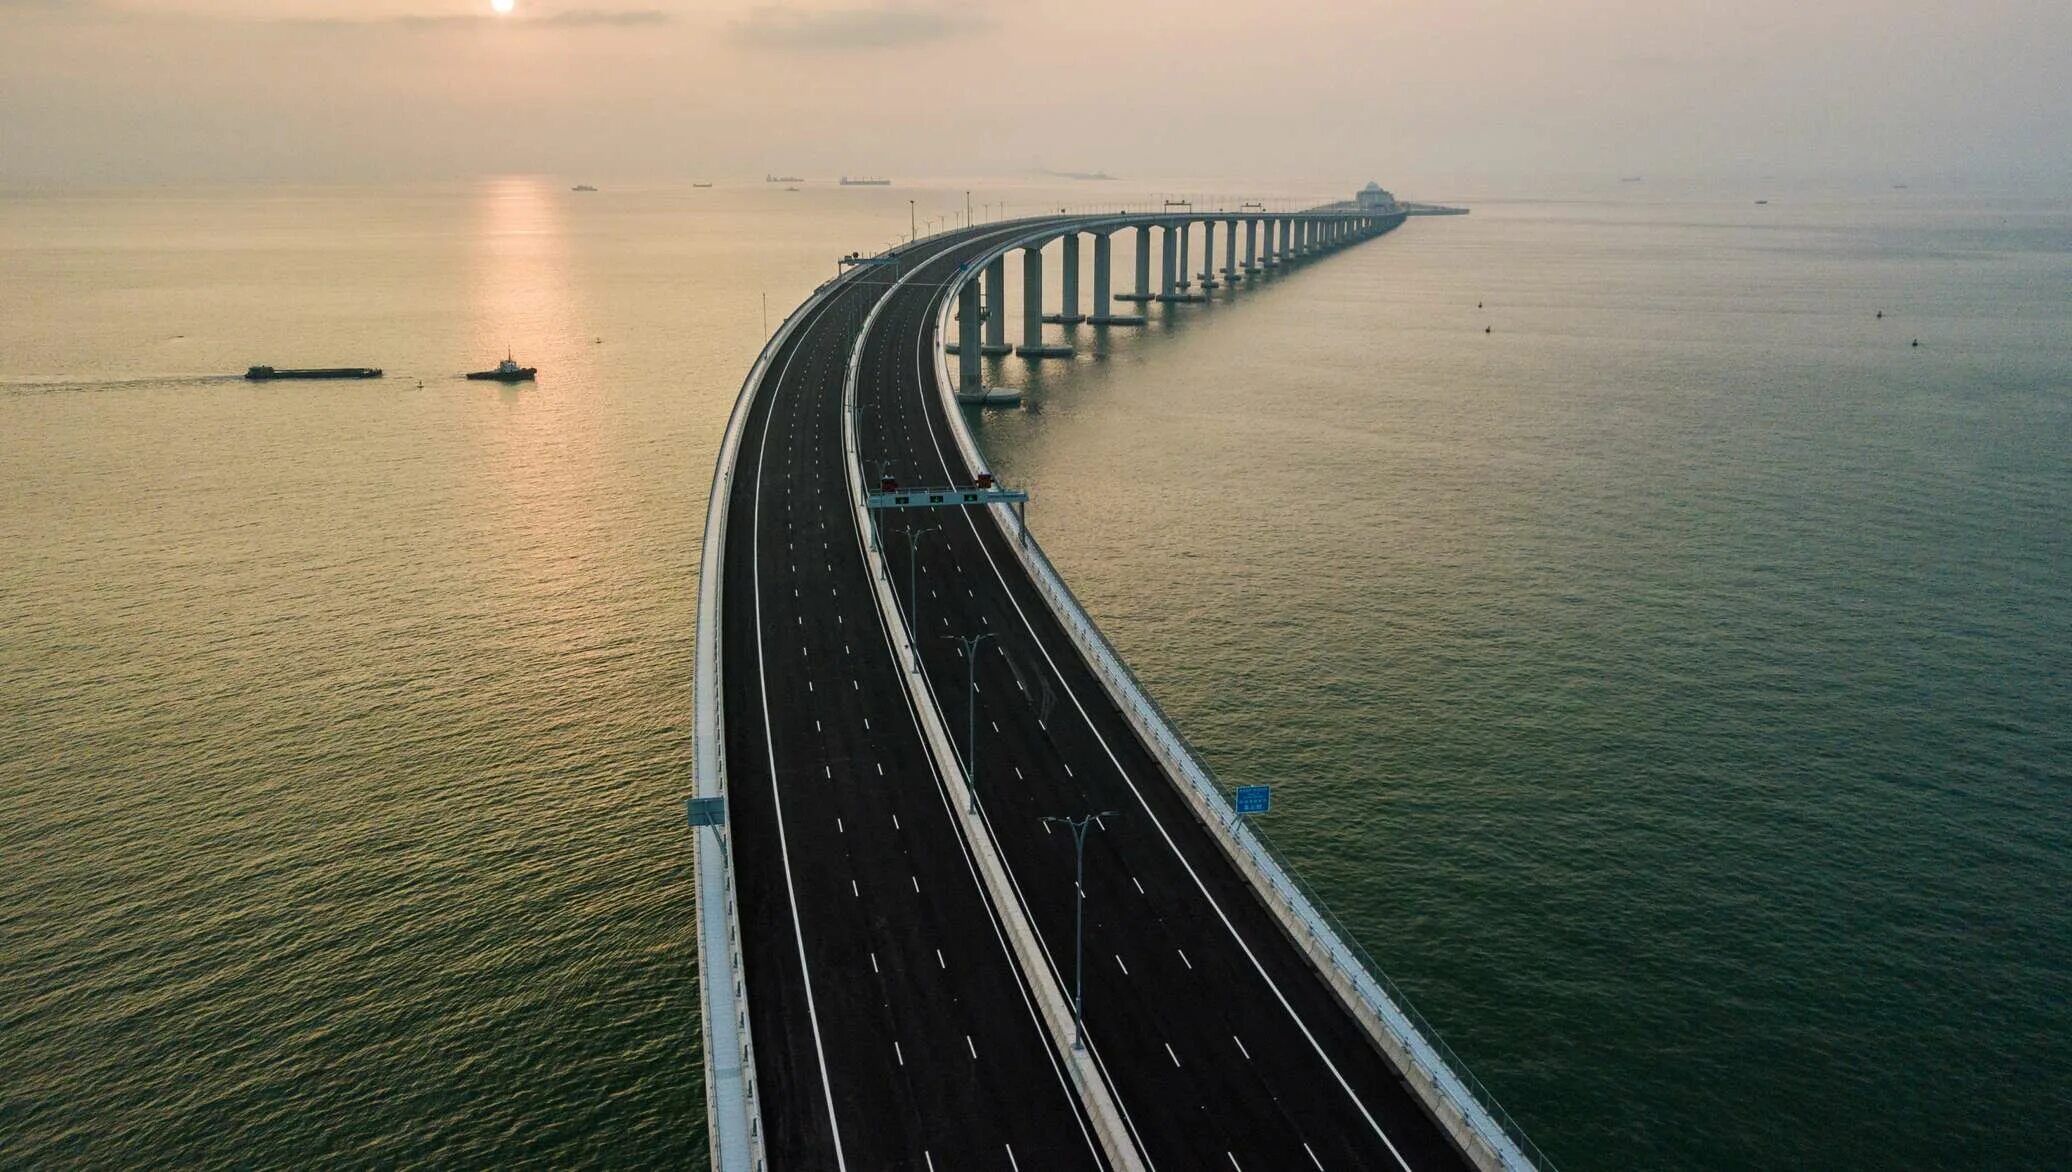 Даньян Куньшаньский мост. Мост Гонконг-Чжухай-Макао Китай. Мост в Макао. 55-Километровый мост Гонконг-Чжухай-Макао.